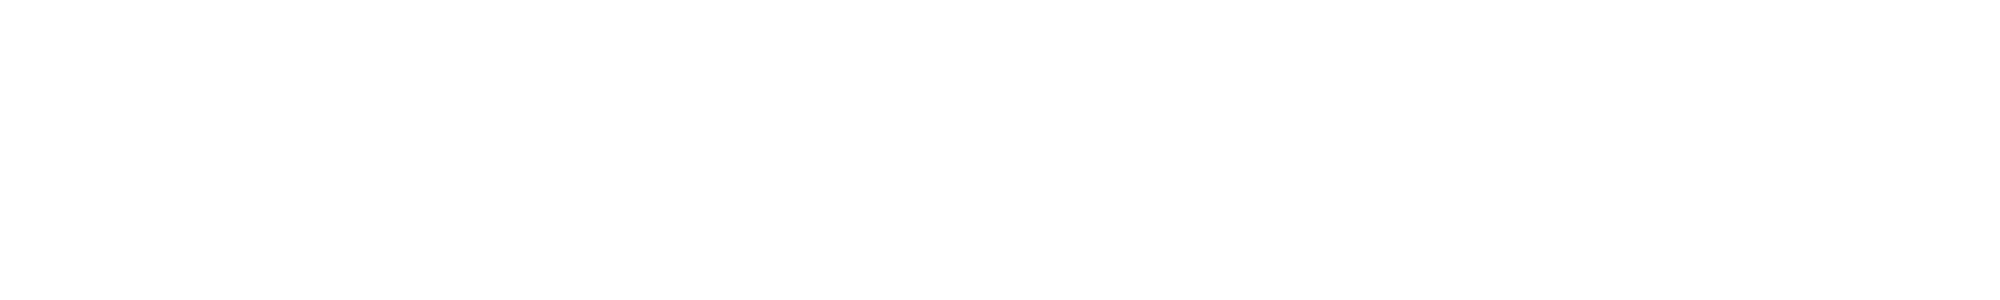 RMcC Logo White